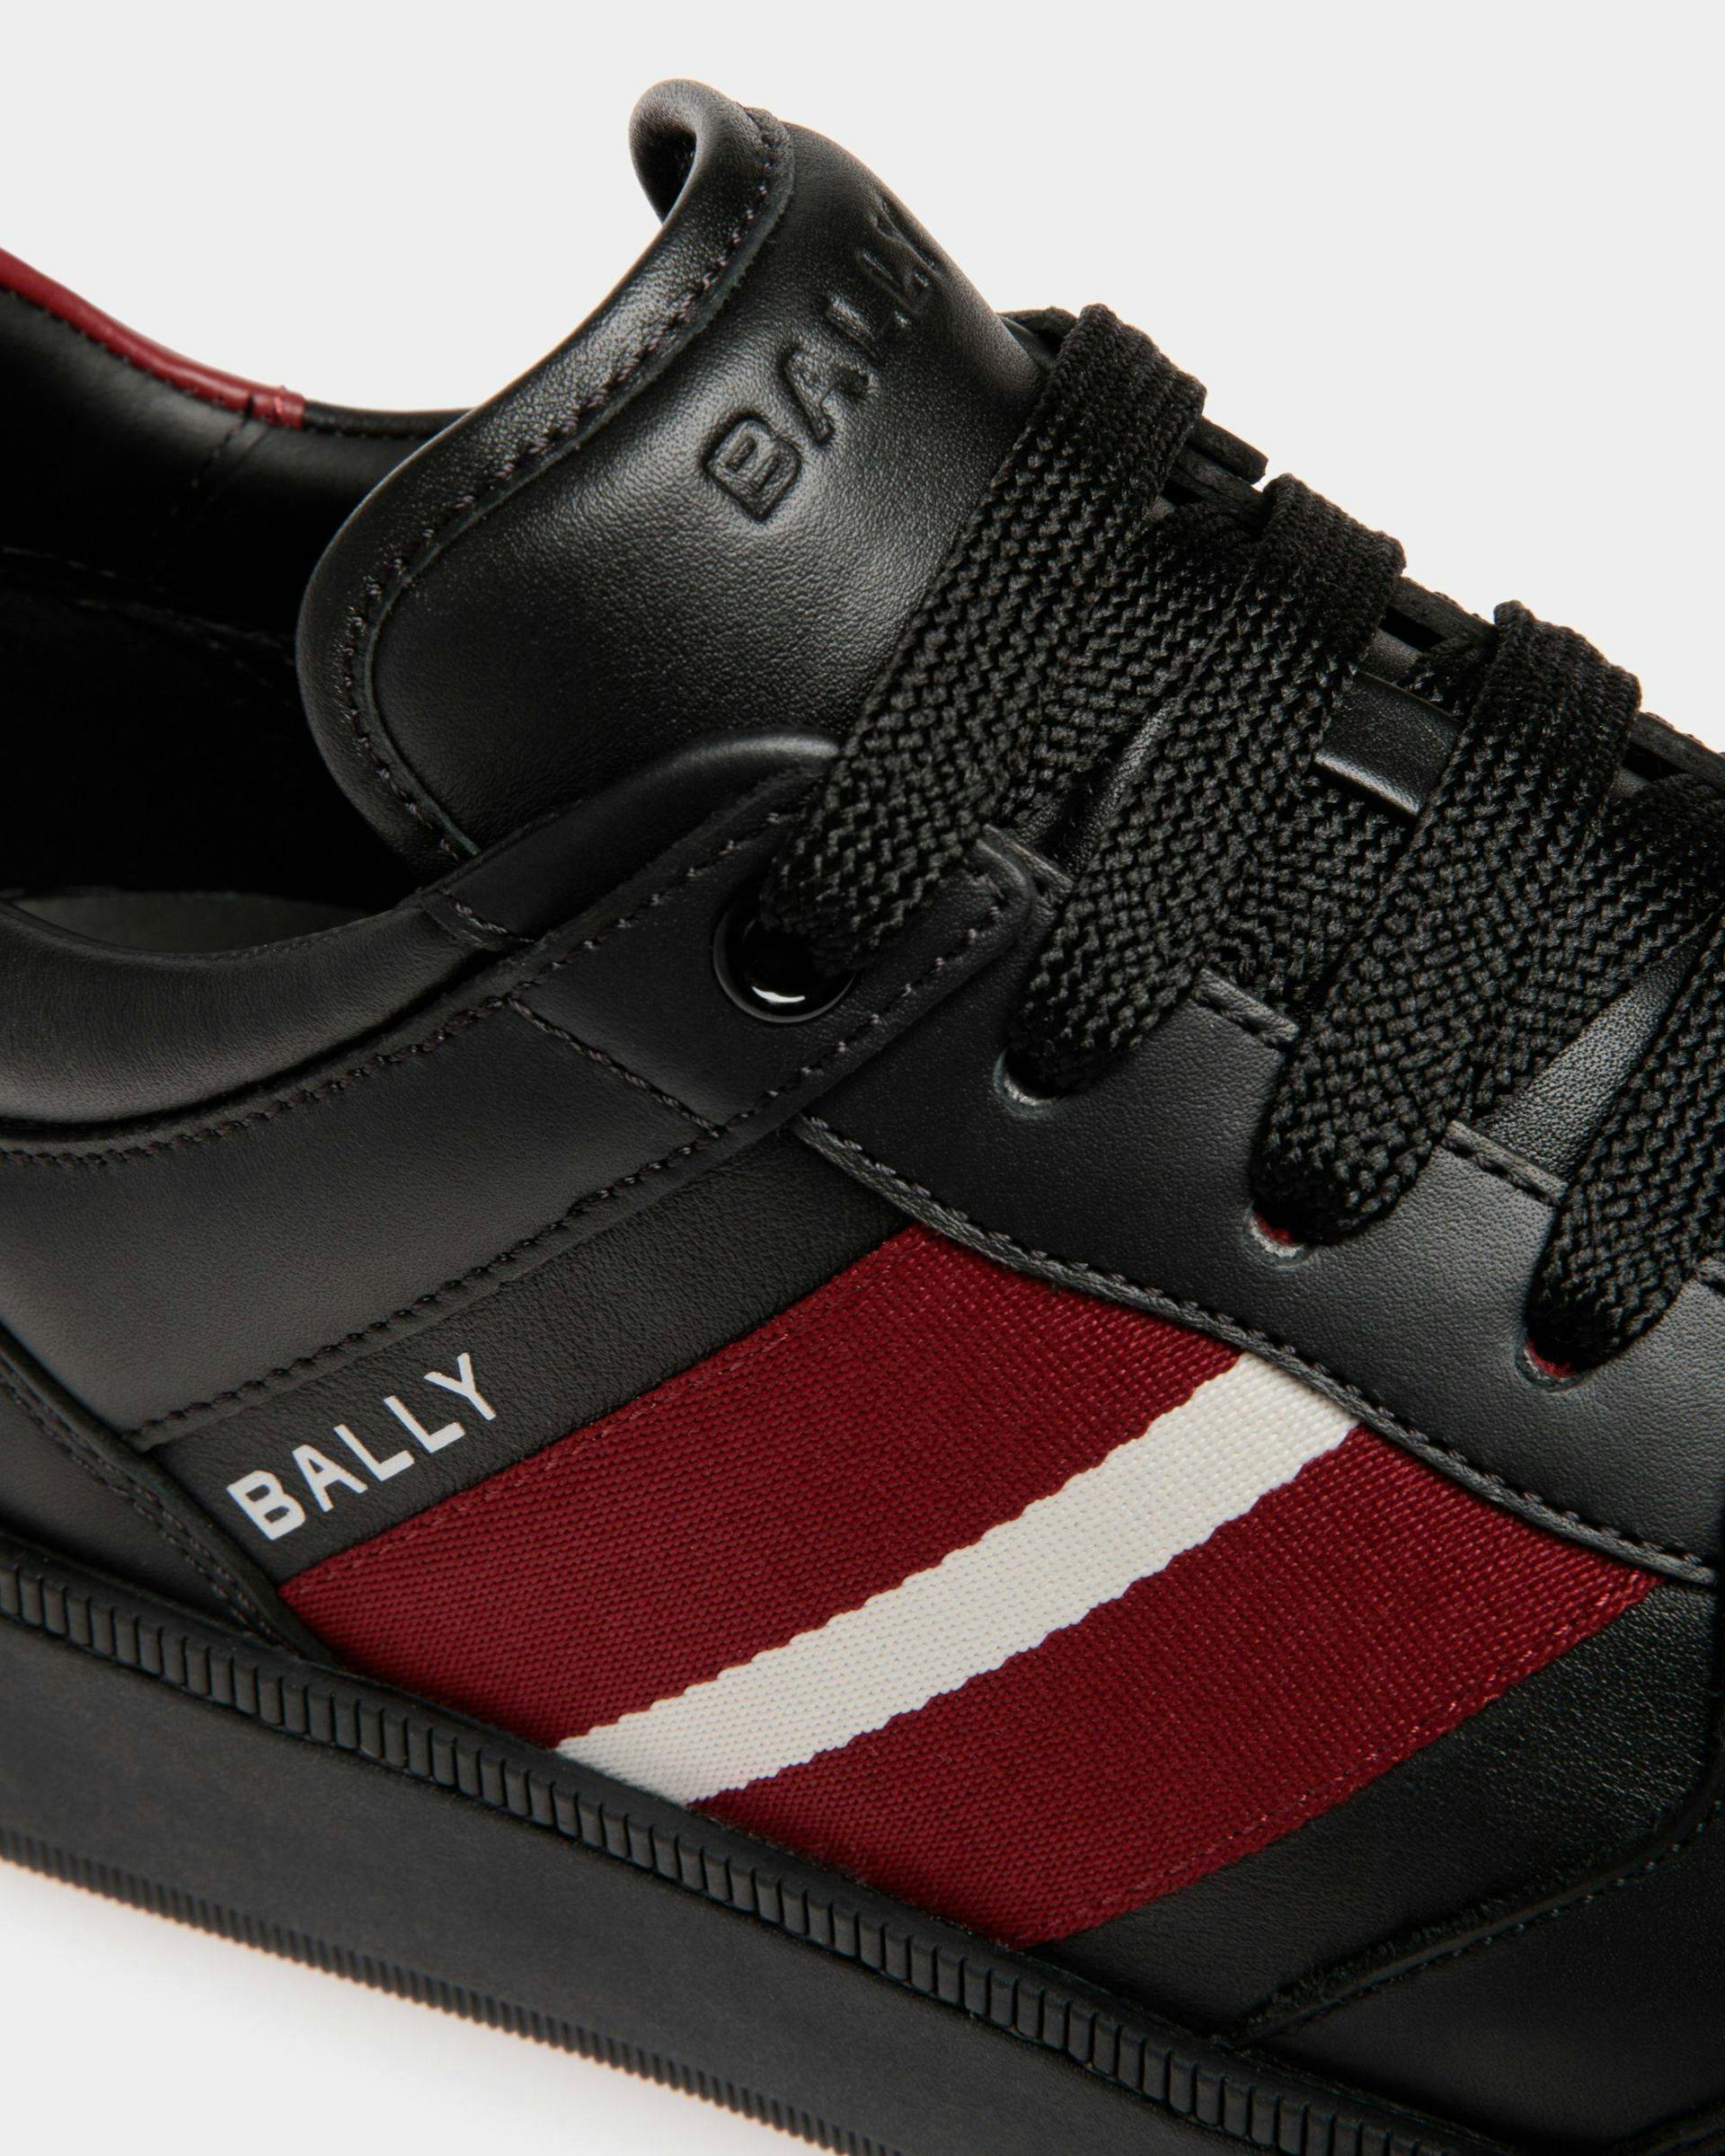 Men's Raise Sneaker In Black Leather | Bally | Still Life Detail